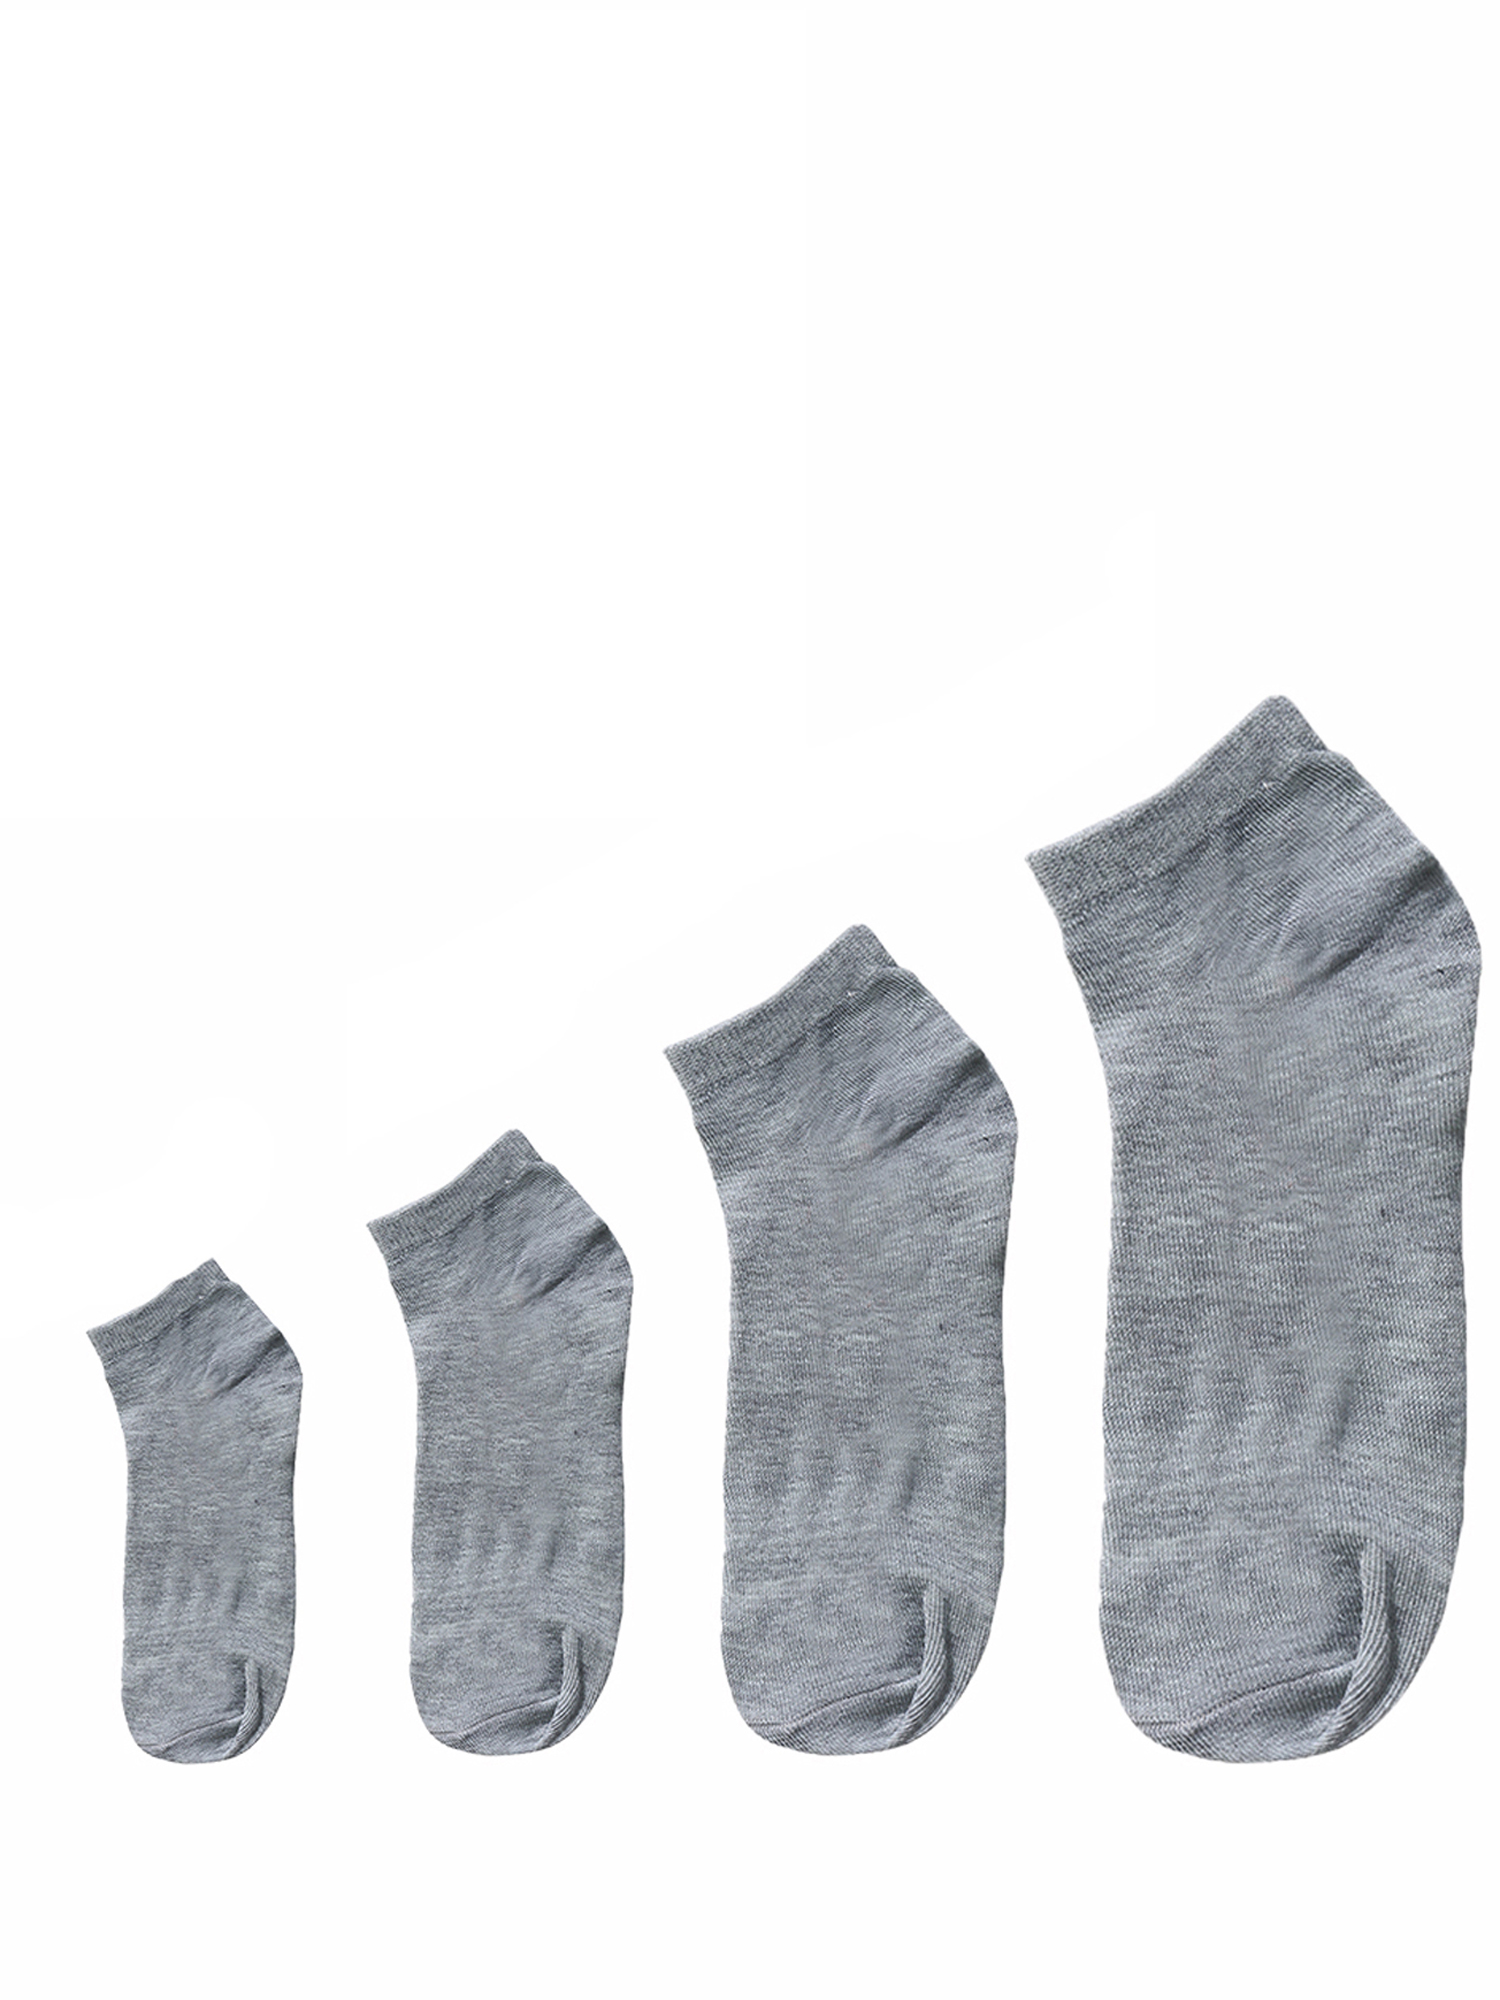 Unique Bargains Soft Cotton Athletic Ankle Socks 5-Pack (Junior & Women's) - image 2 of 7